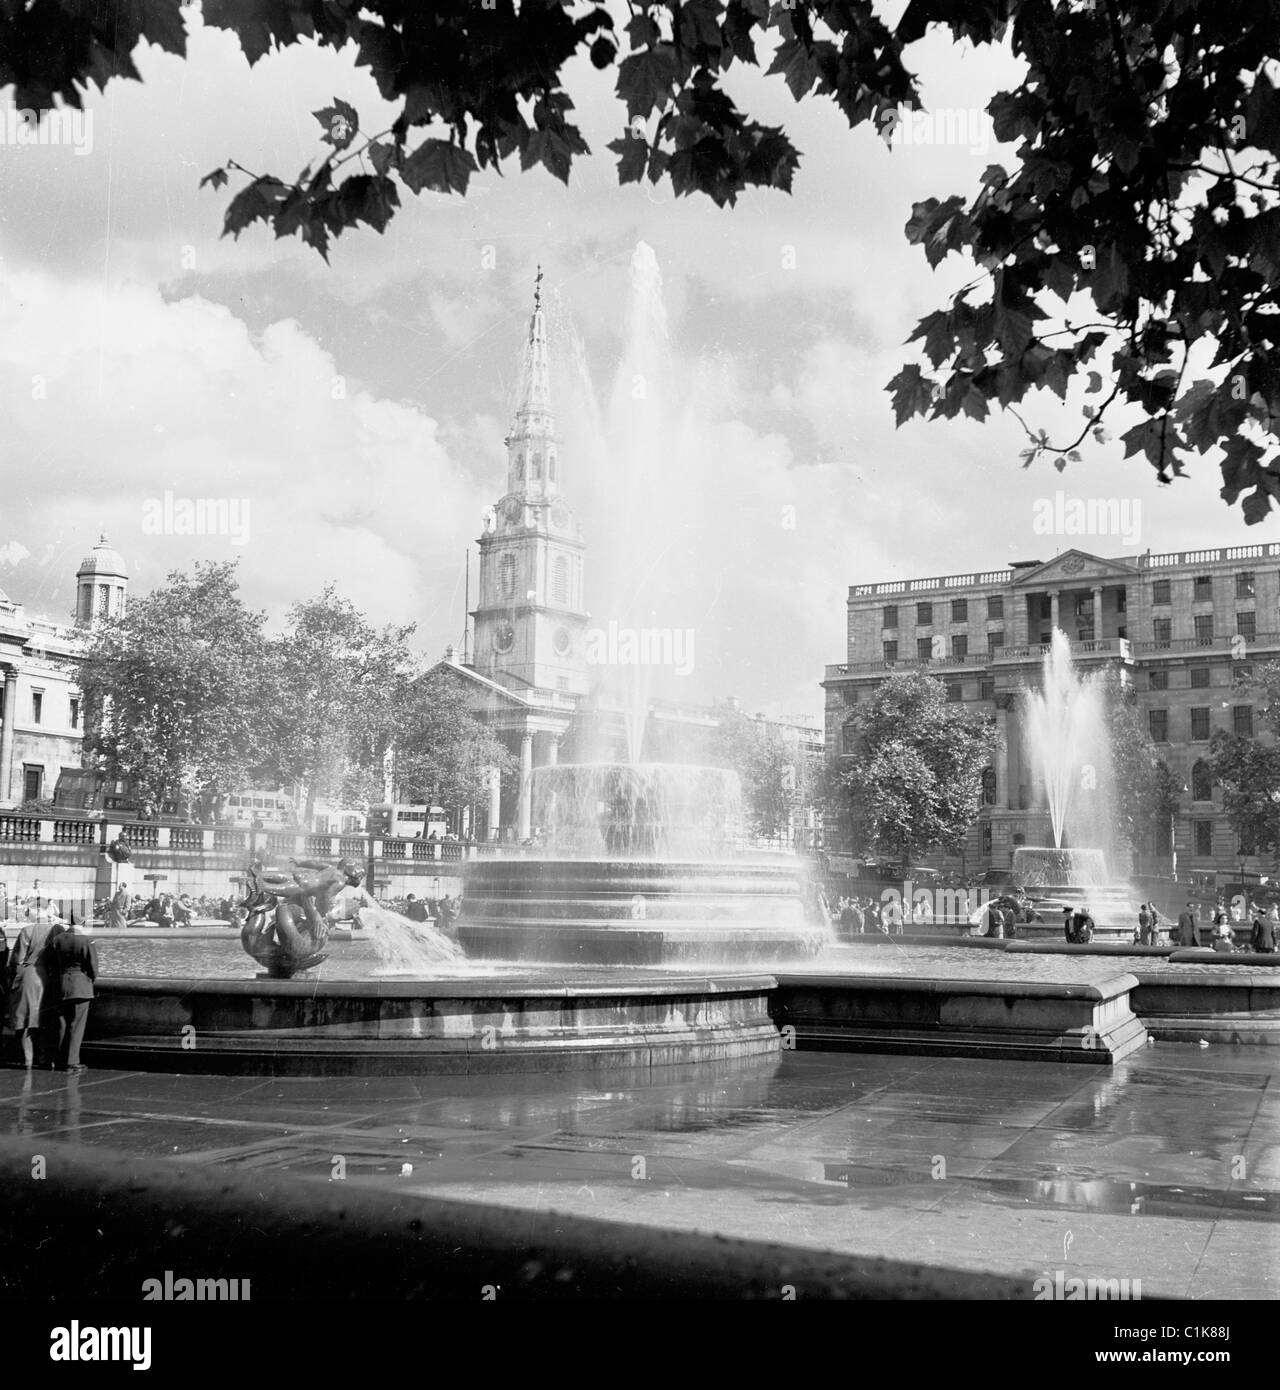 1950, le due fontane di Trafalgar Square, Londra, progettate da Sir Edwin Lutyens come memoriali per i signori Jellicoe e Beaty, sostituendo quelle precedenti. Foto Stock